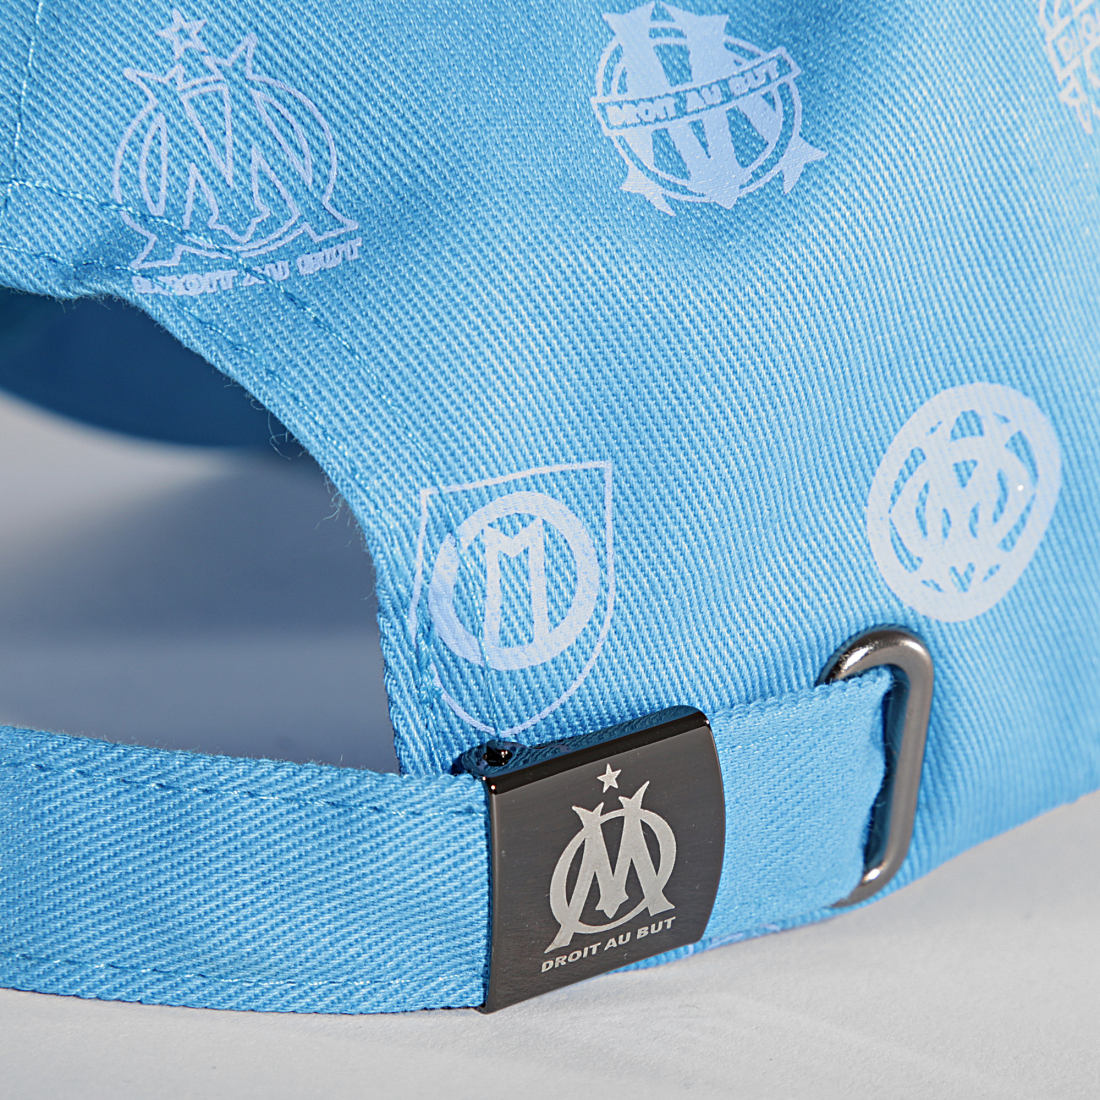 Casquette Plate OM Bleu  Boutique Officielle Olympique de Marseille